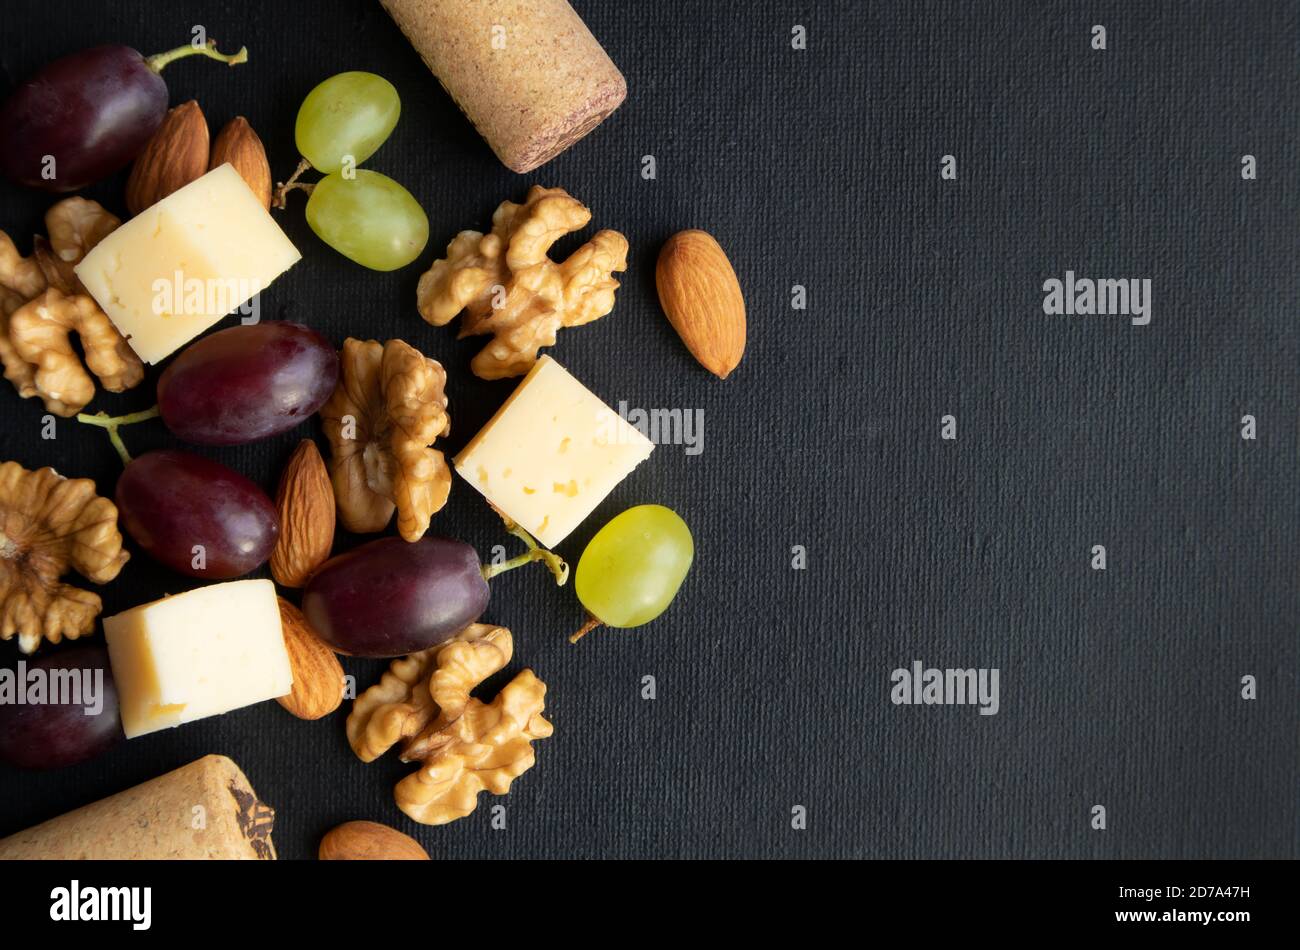 Maasdam Käse. Walnuss und Beeren von lila und grünen Trauben auf einem dunklen Hintergrund mit Platz für Text. Poster. Stockfoto